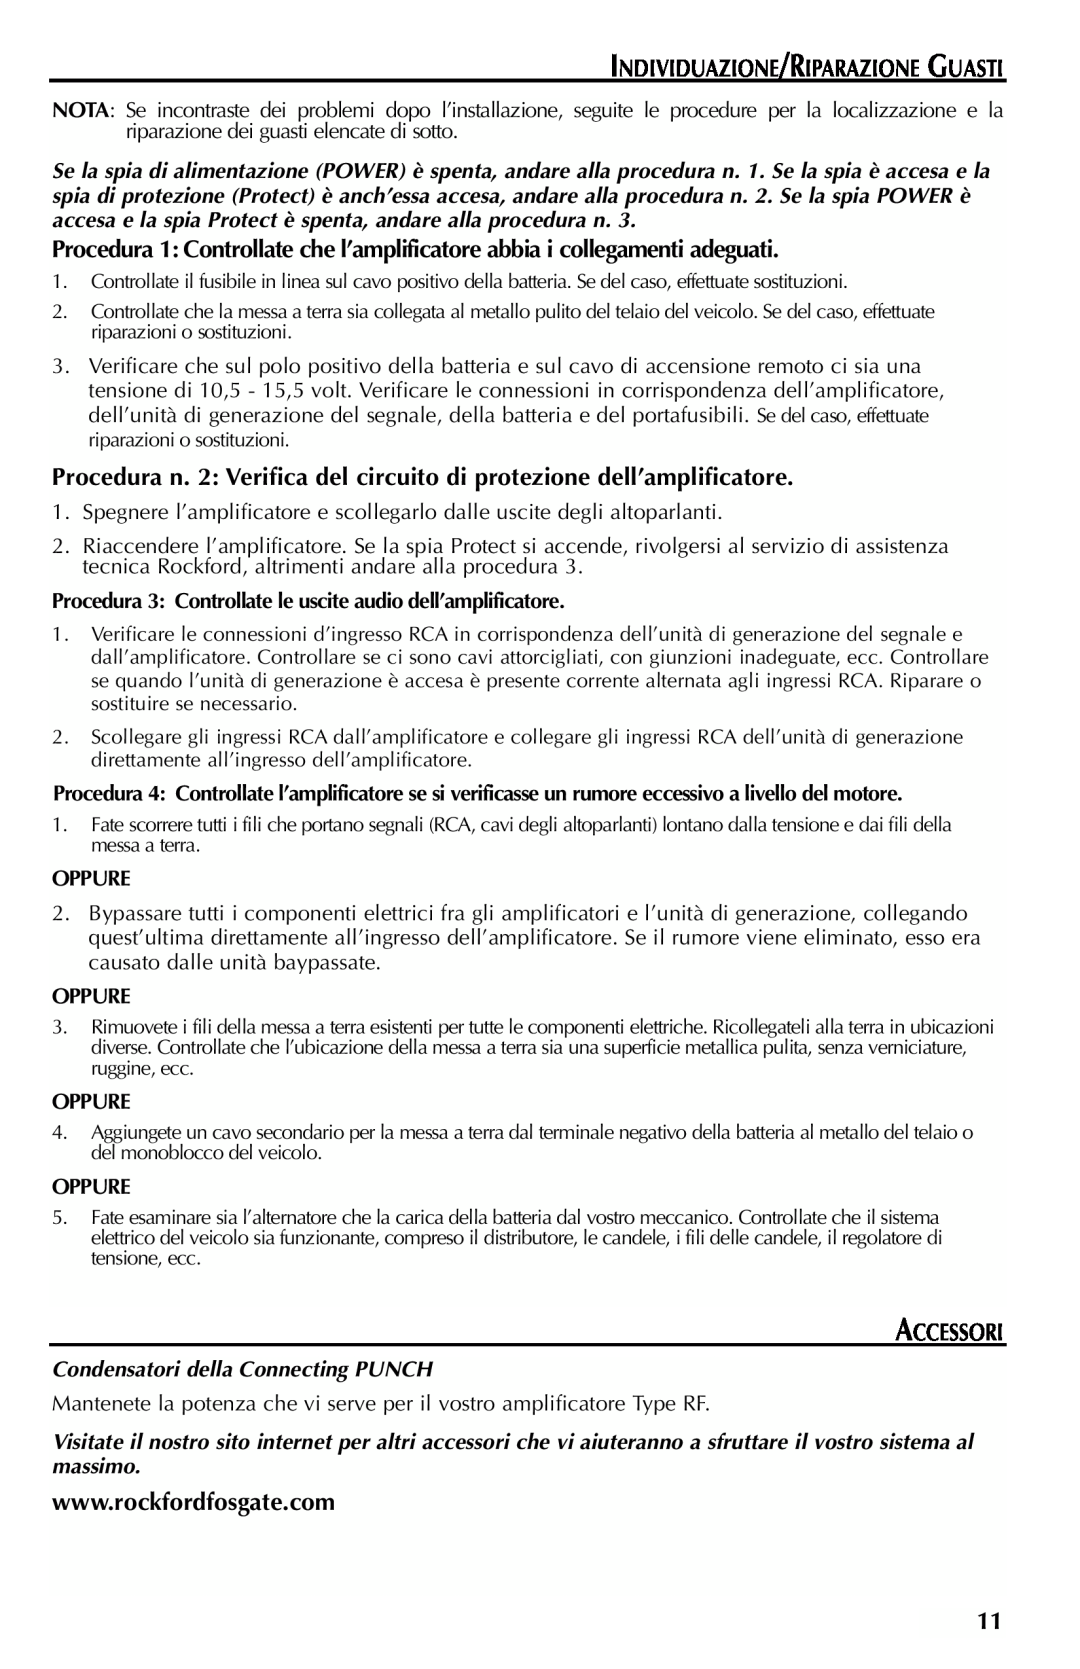 Rockford Fosgate FFX6 manual Individuazione/Riparazione Guasti, Accessori, Oppure, Condensatori della Connecting PUNCH 